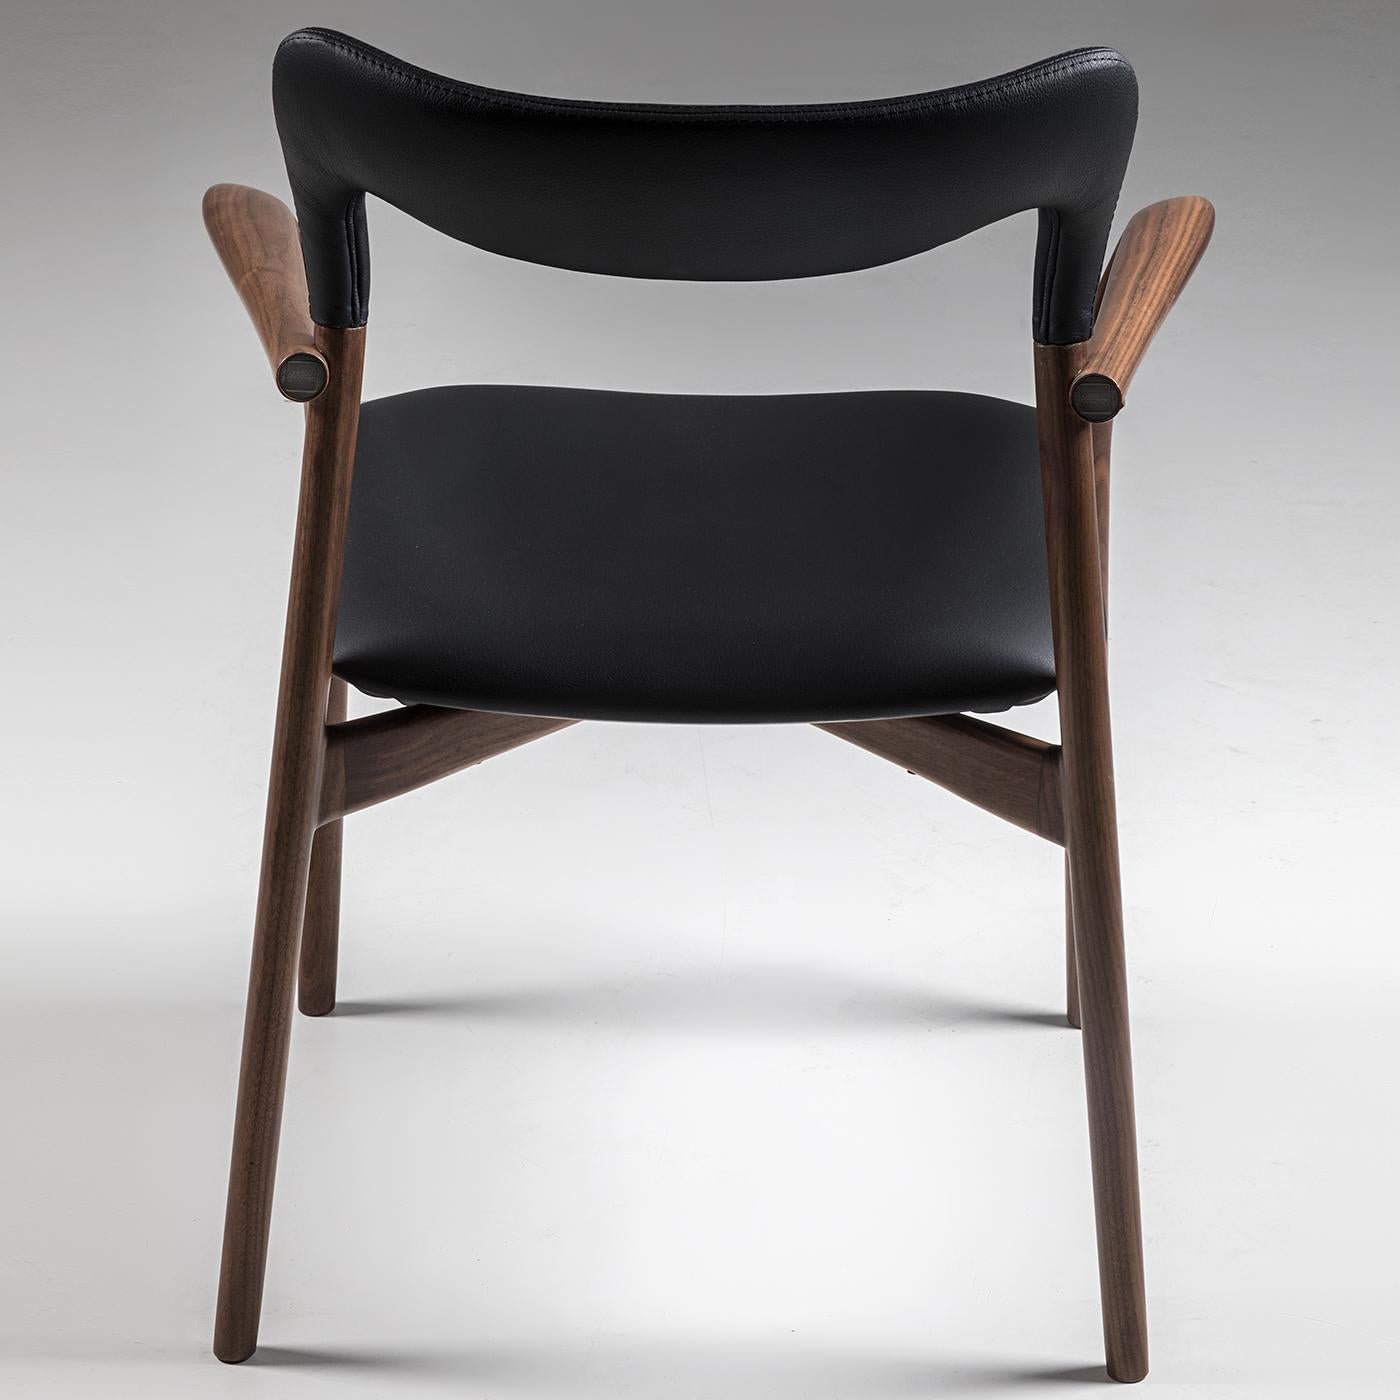 Dieser Sessel, der sich von jedem Designtrend abhebt, wird in jeder Inneneinrichtung einen Akzent setzen. Seine anmutigen Linien und abgerundeten Kanten unterstreichen die exquisite Handwerkskunst, die die Kong Collection auszeichnet. Die fließende,